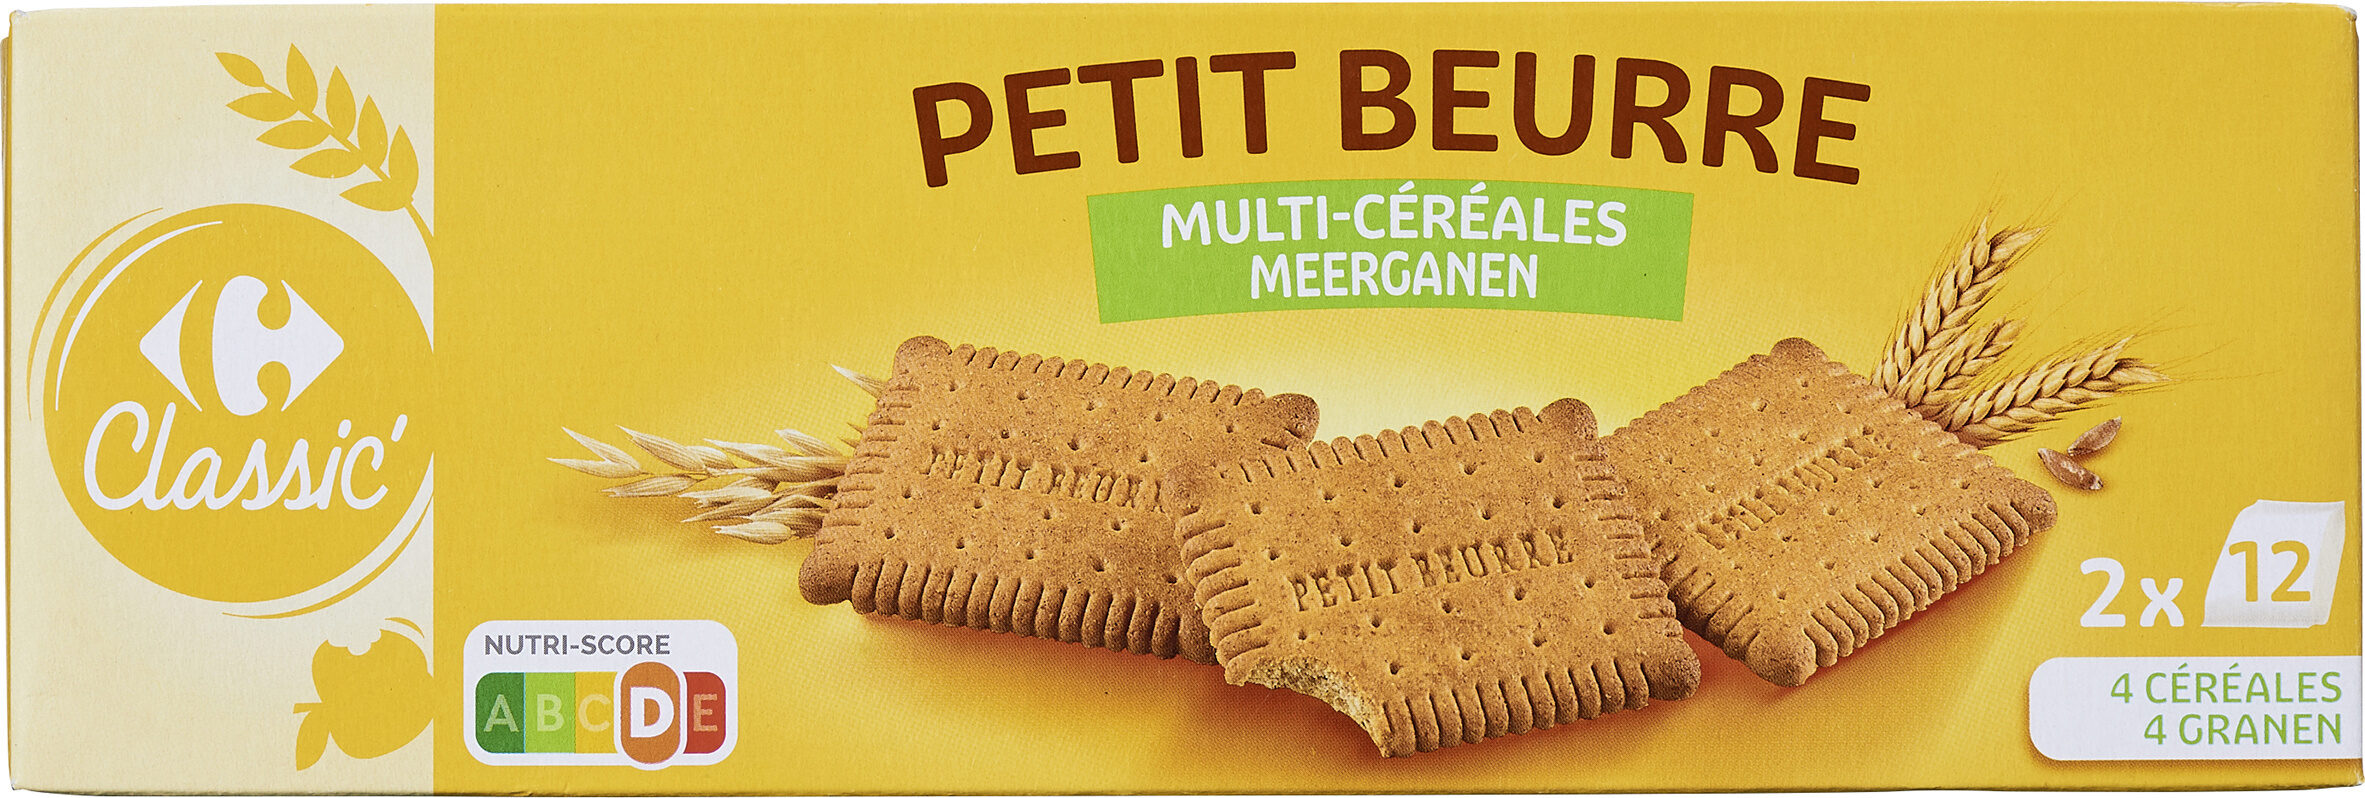 Petit beurre multi céréales - Produkt - fr